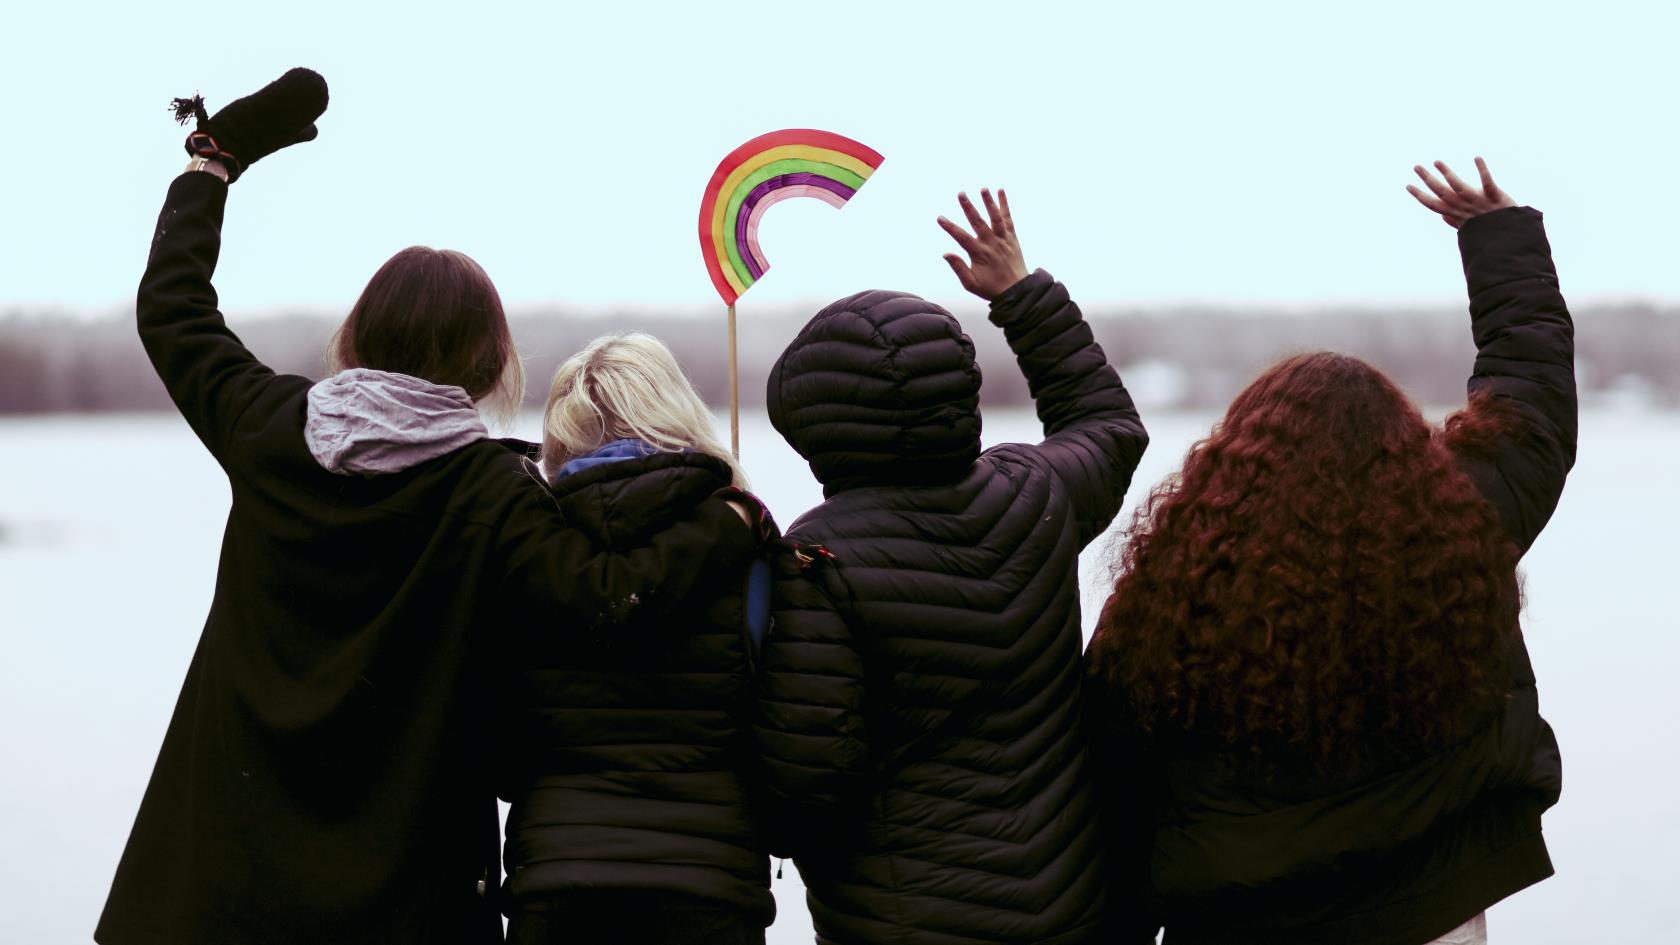 Fyra ungdomar står med ryggen mot kameran, vända mot vattnet och vinkar. En av dem håller i en regnbåge på en pinne.